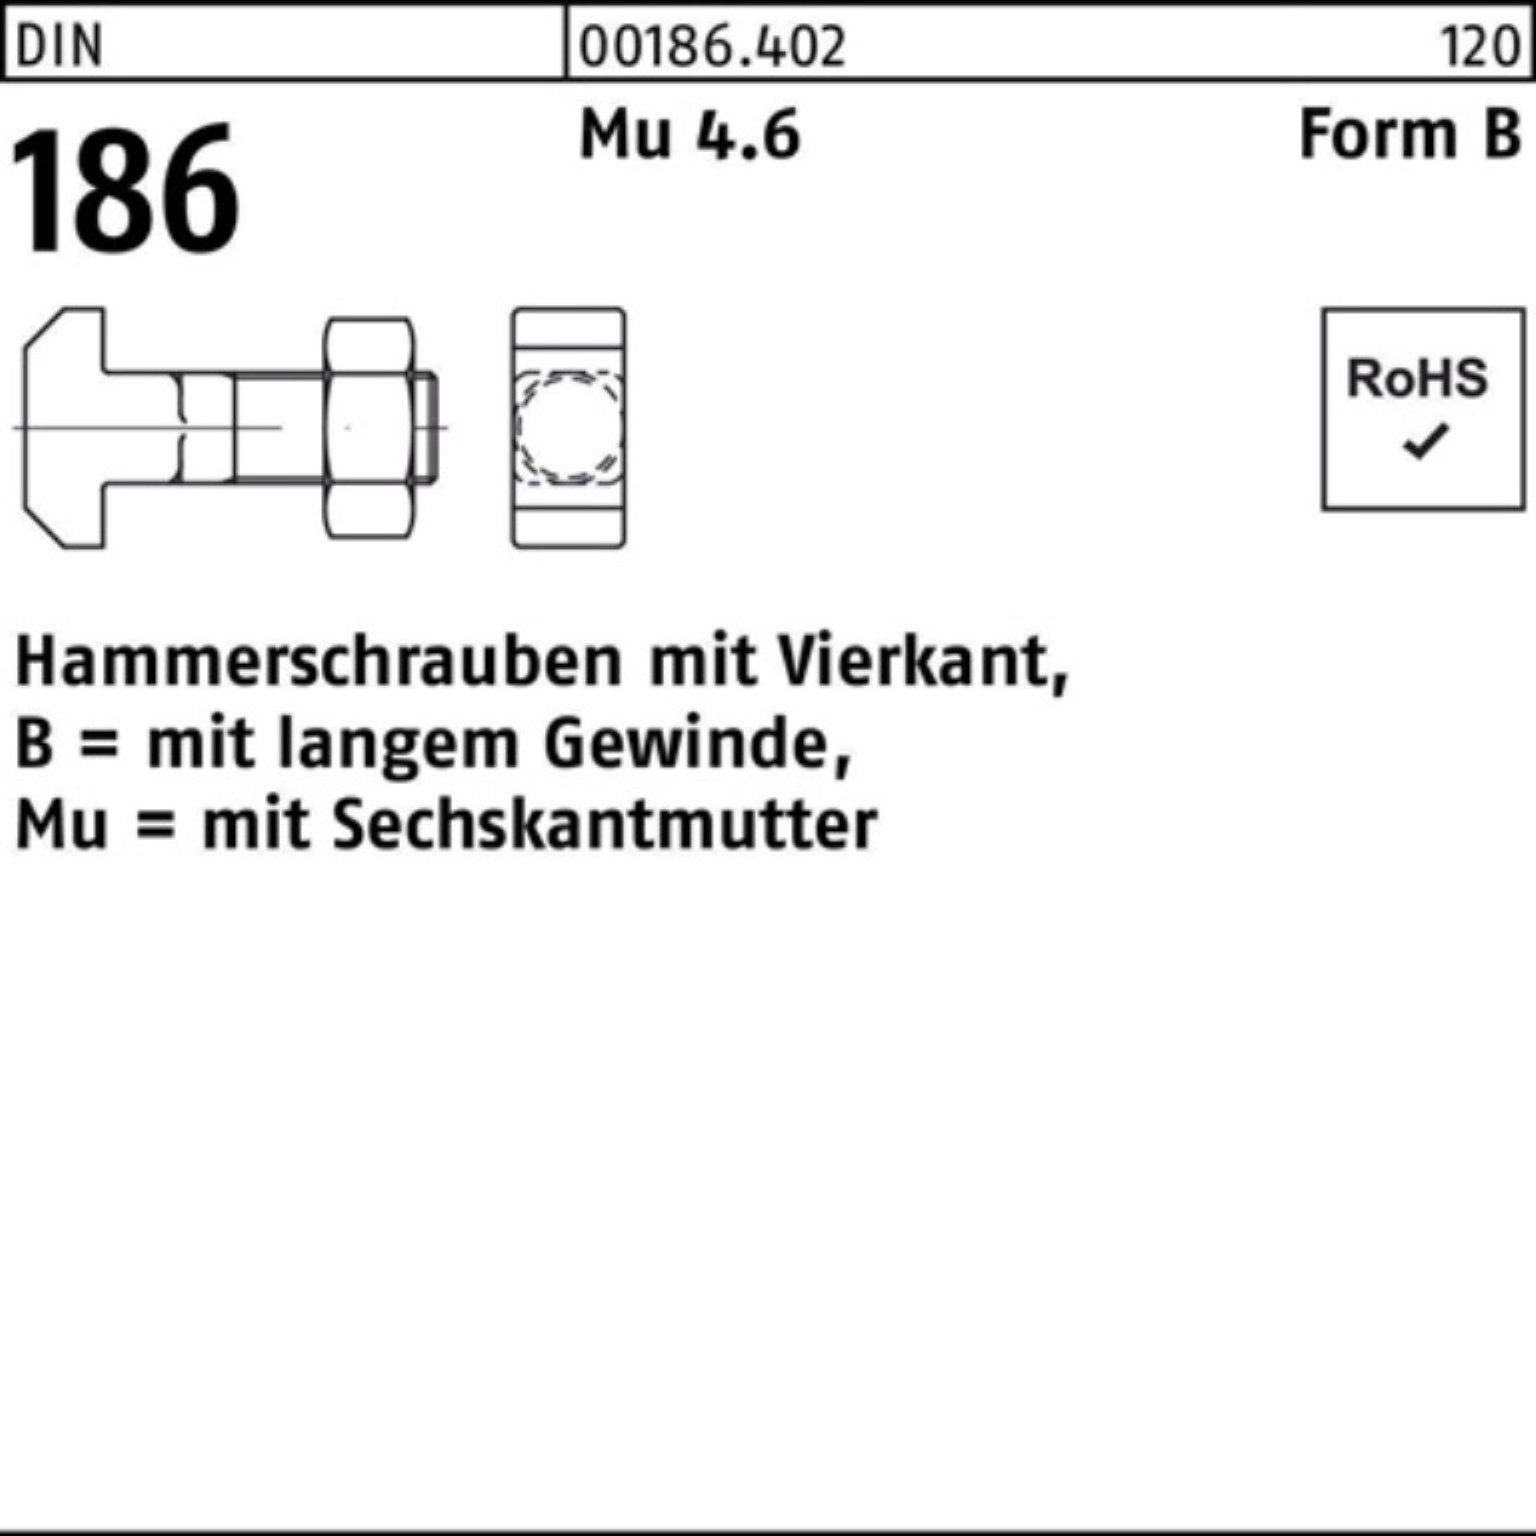 Reyher Schraube 100er Pack Hammerschraube DIN 186 FormB Vierkant 6-ktmutter BM 16x 100